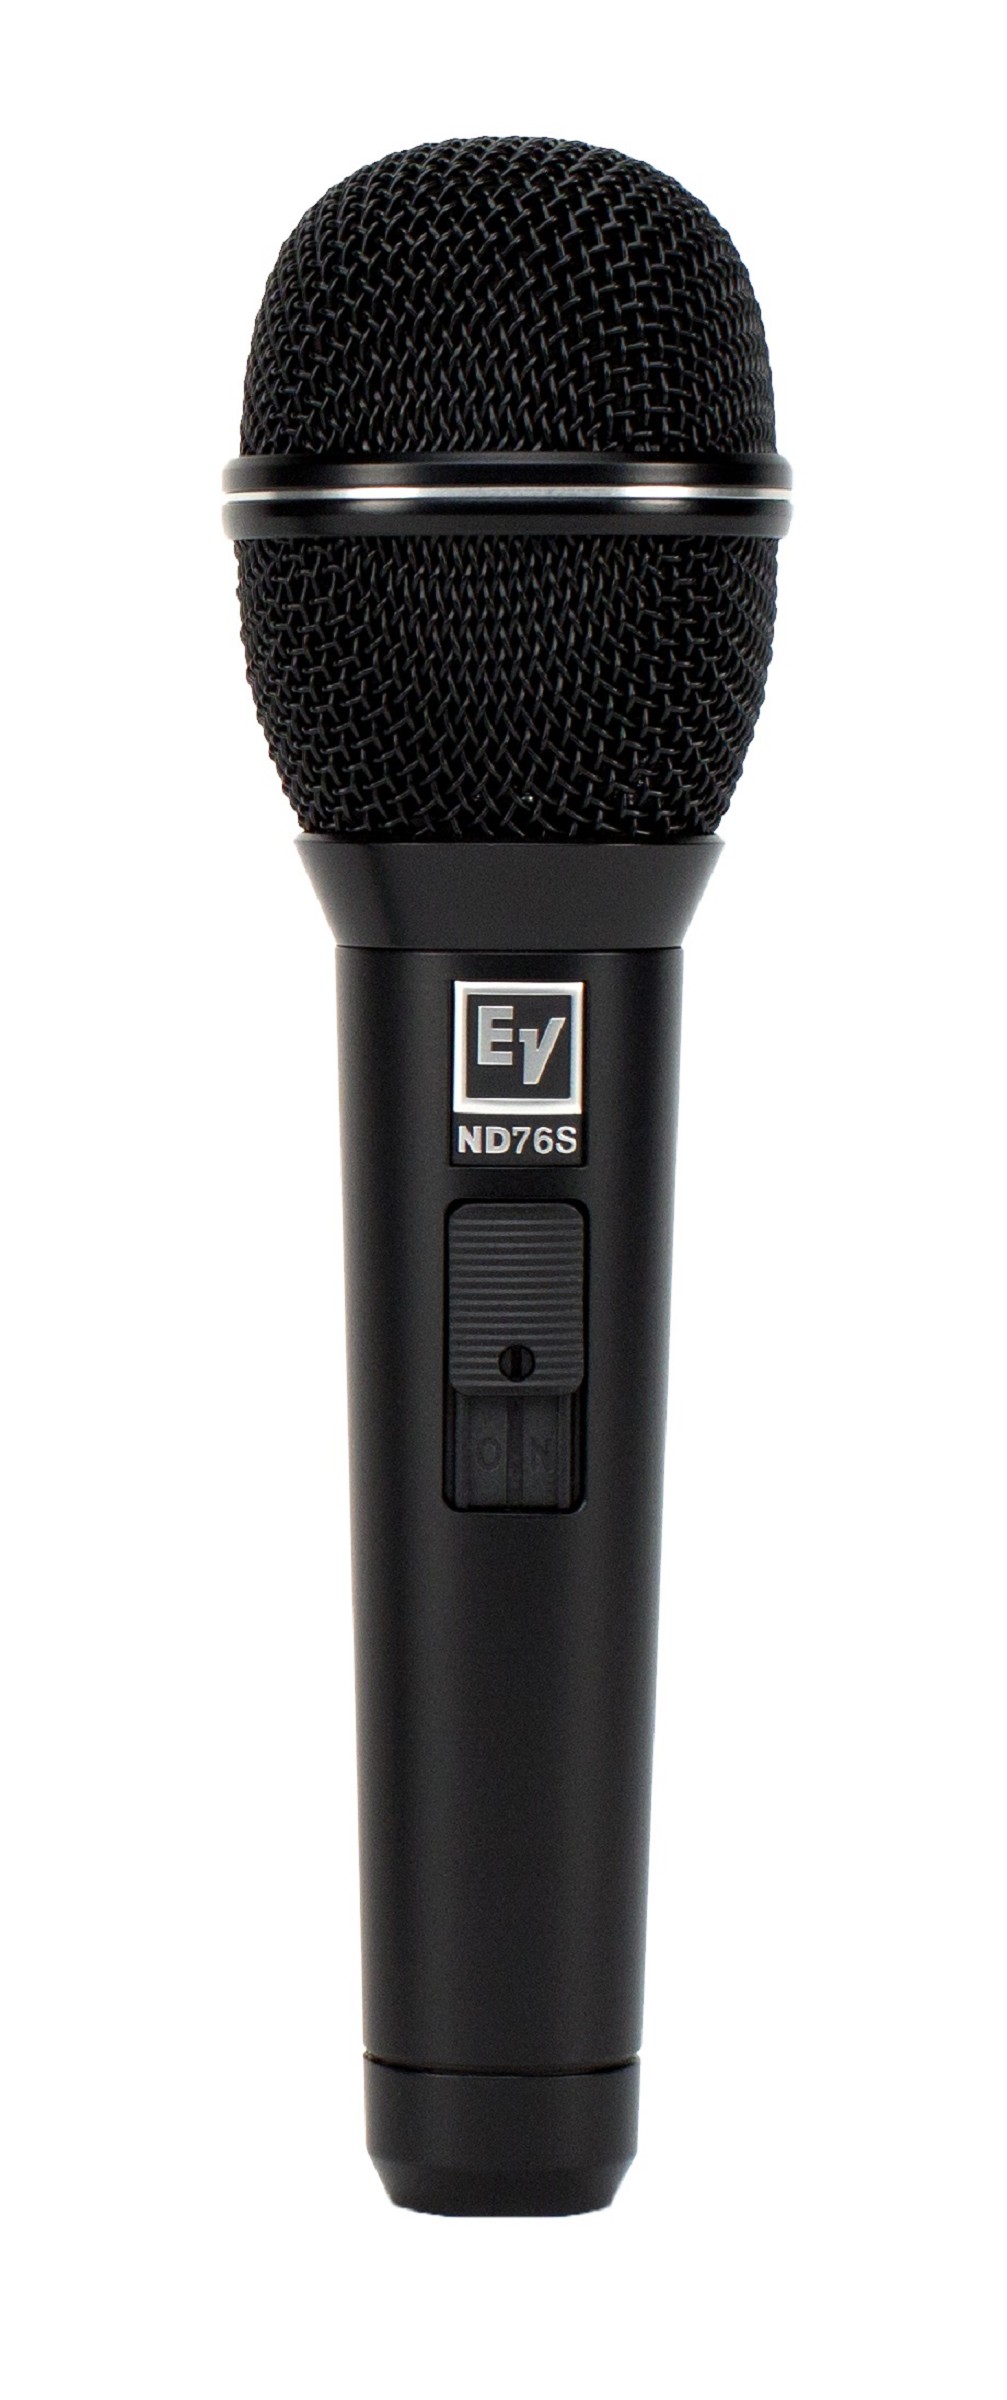 EV ND76S Gesangsmikrofon mit Schalter, Dynamisch, Niere